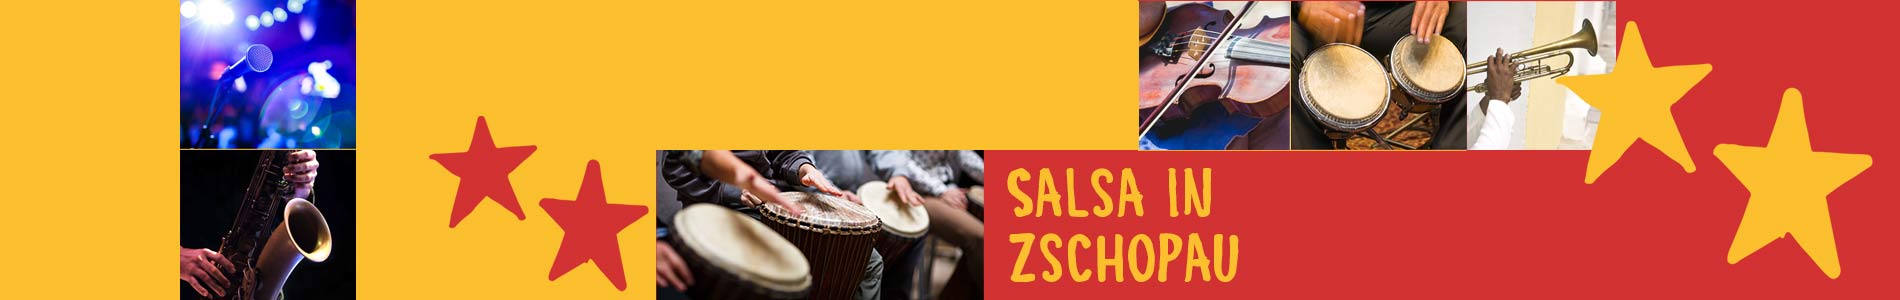 Salsa in Zschopau – Salsa lernen und tanzen, Tanzkurse, Partys, Veranstaltungen